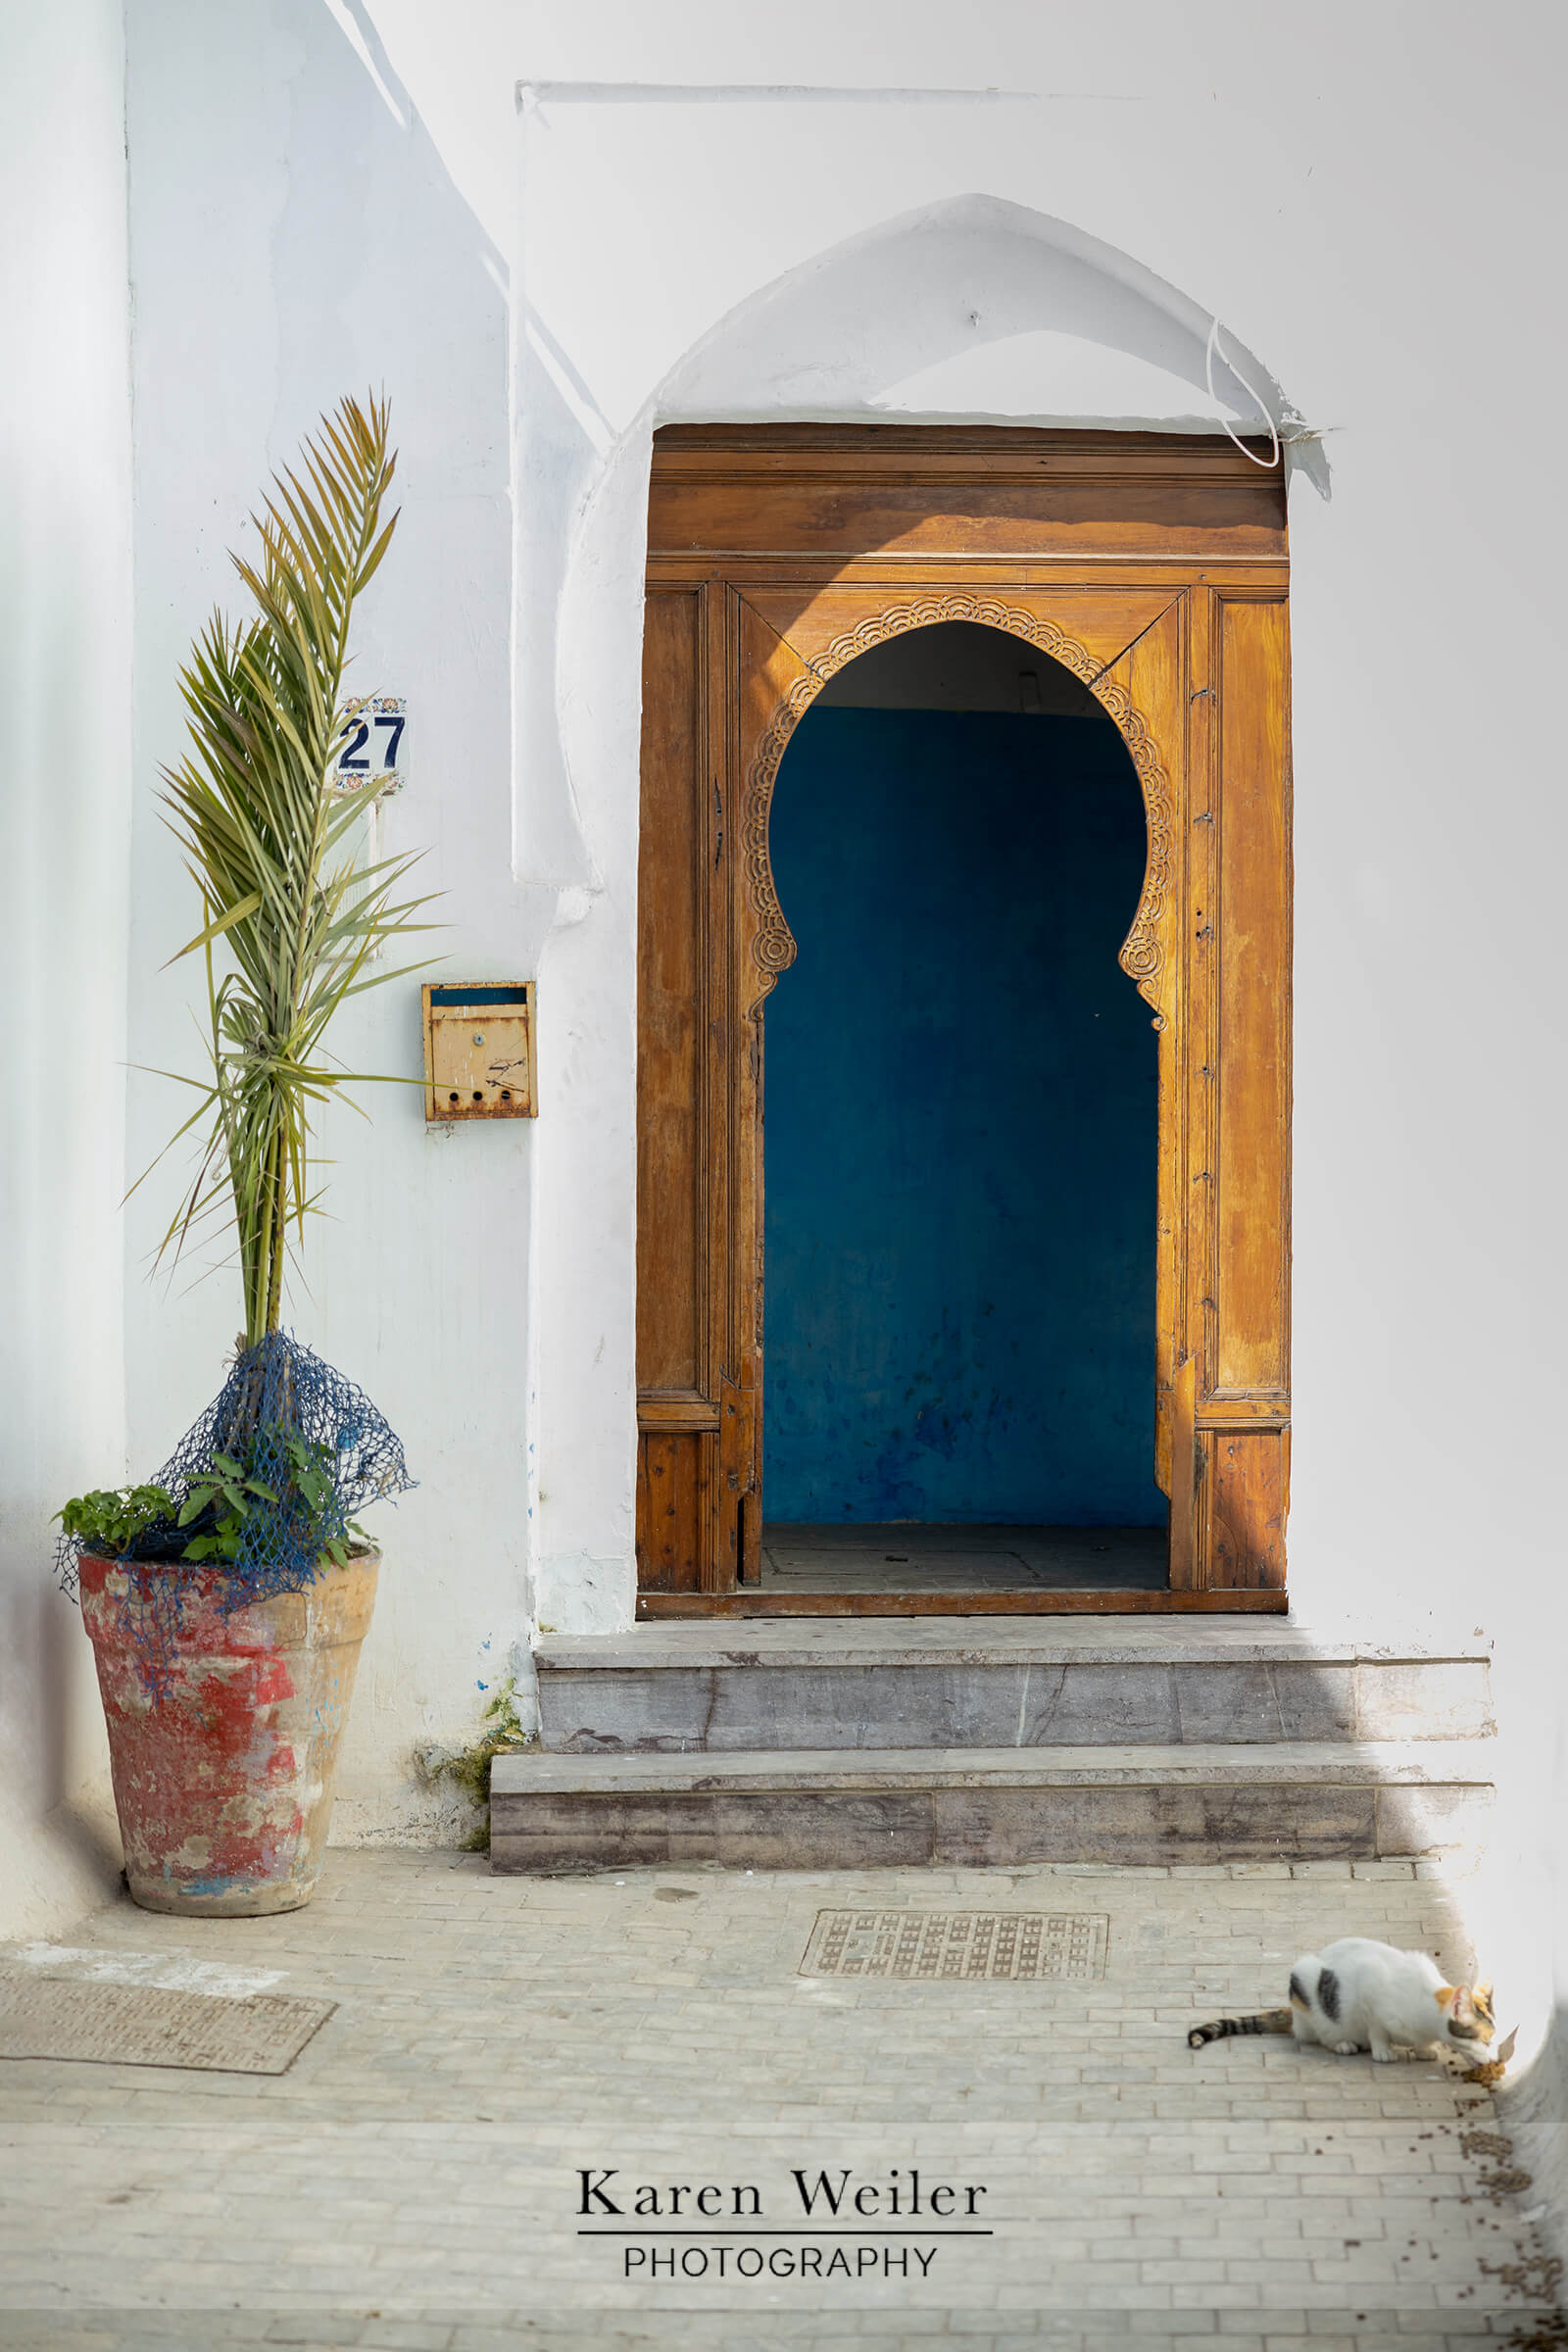 cat in Moroccan doorway.